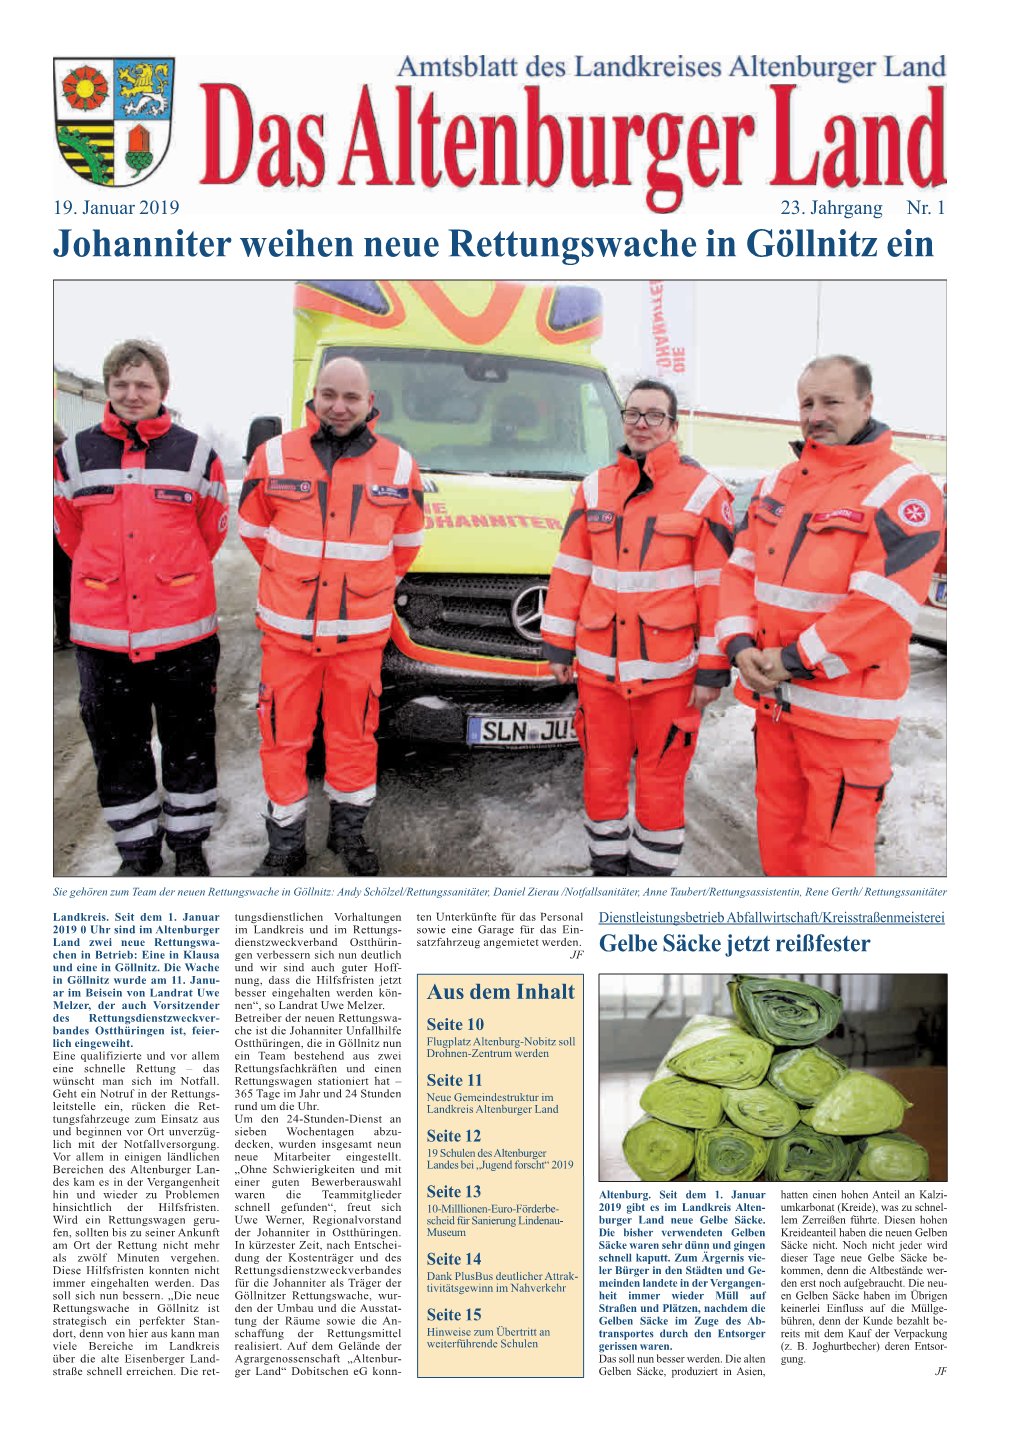 Johanniter Weihen Neue Rettungswache in Göllnitz Ein